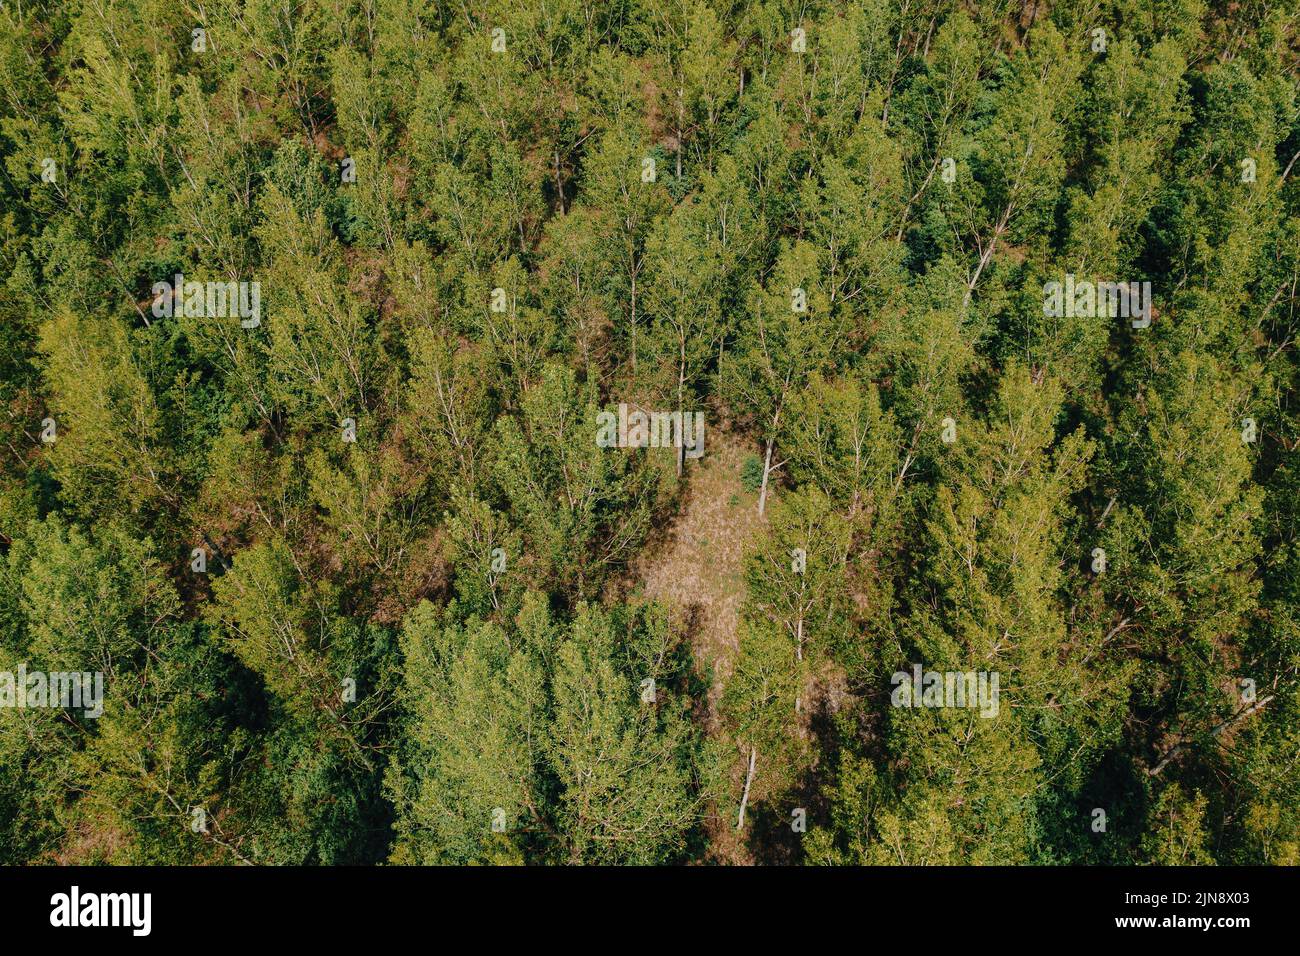 Paisaje de bosque de álamo caducifolio desde arriba, fotografía pov de drones de copas de árboles balanceándose en el viento Foto de stock